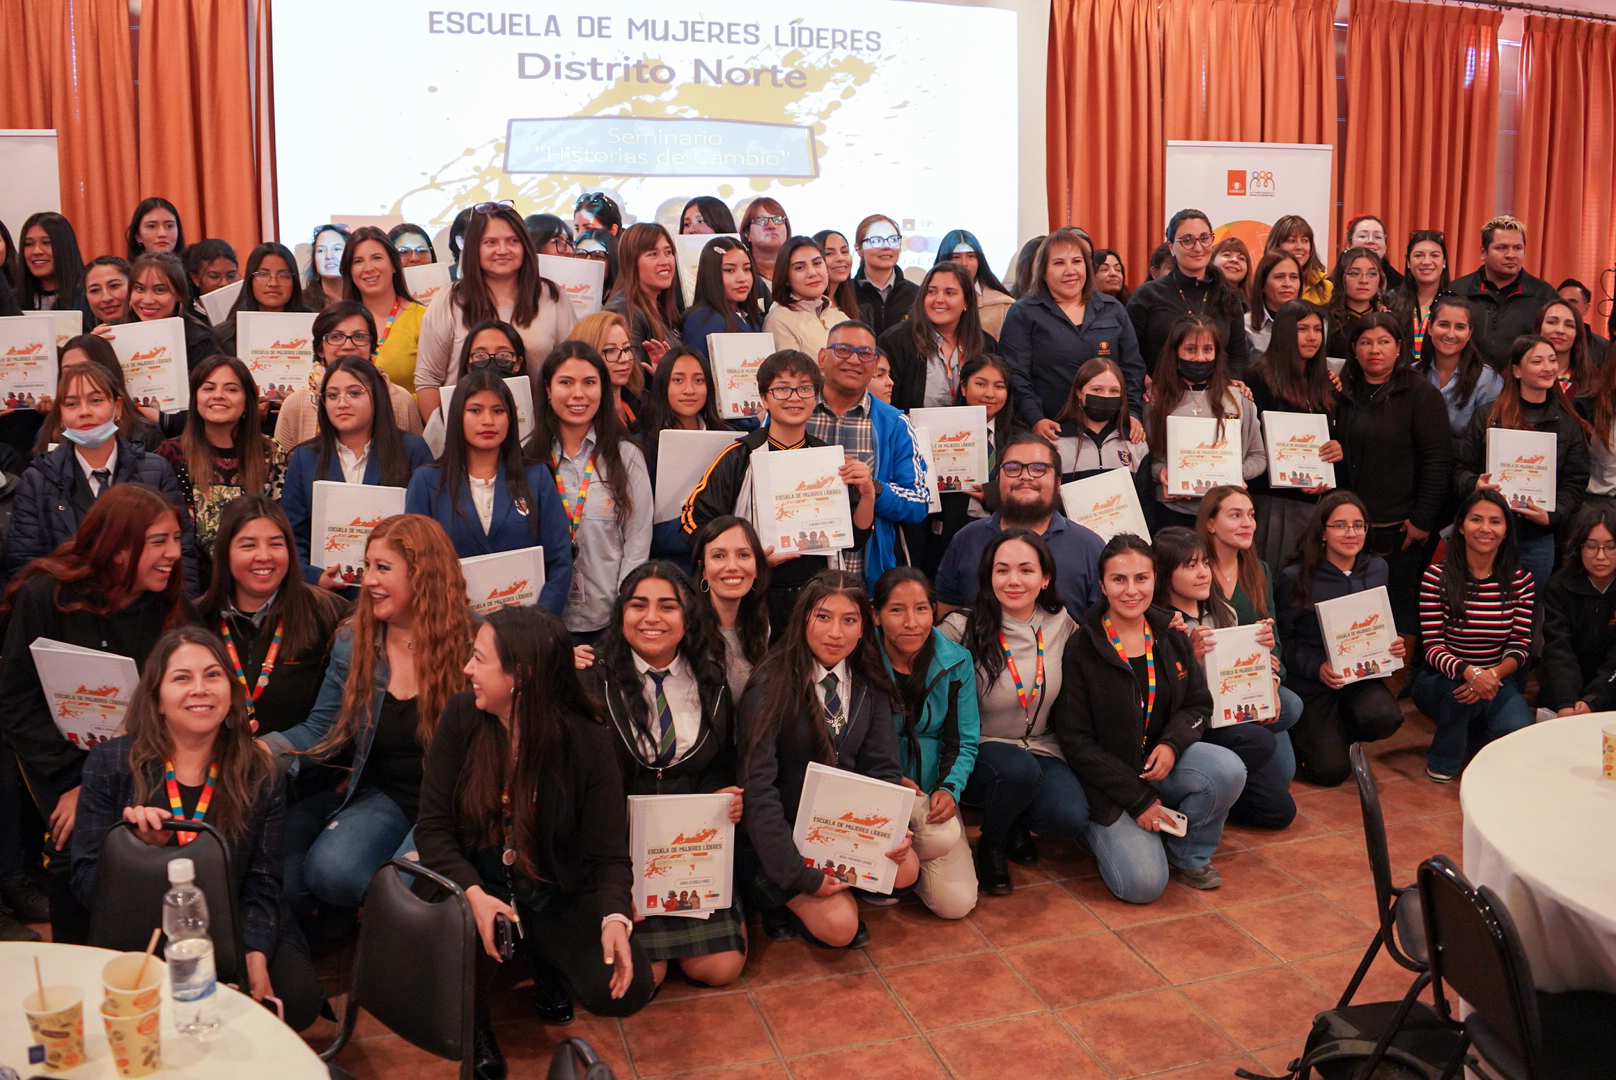 Escuela de Mujeres Líderes de Codelco Distrito Norte realiza nuevo encuentro